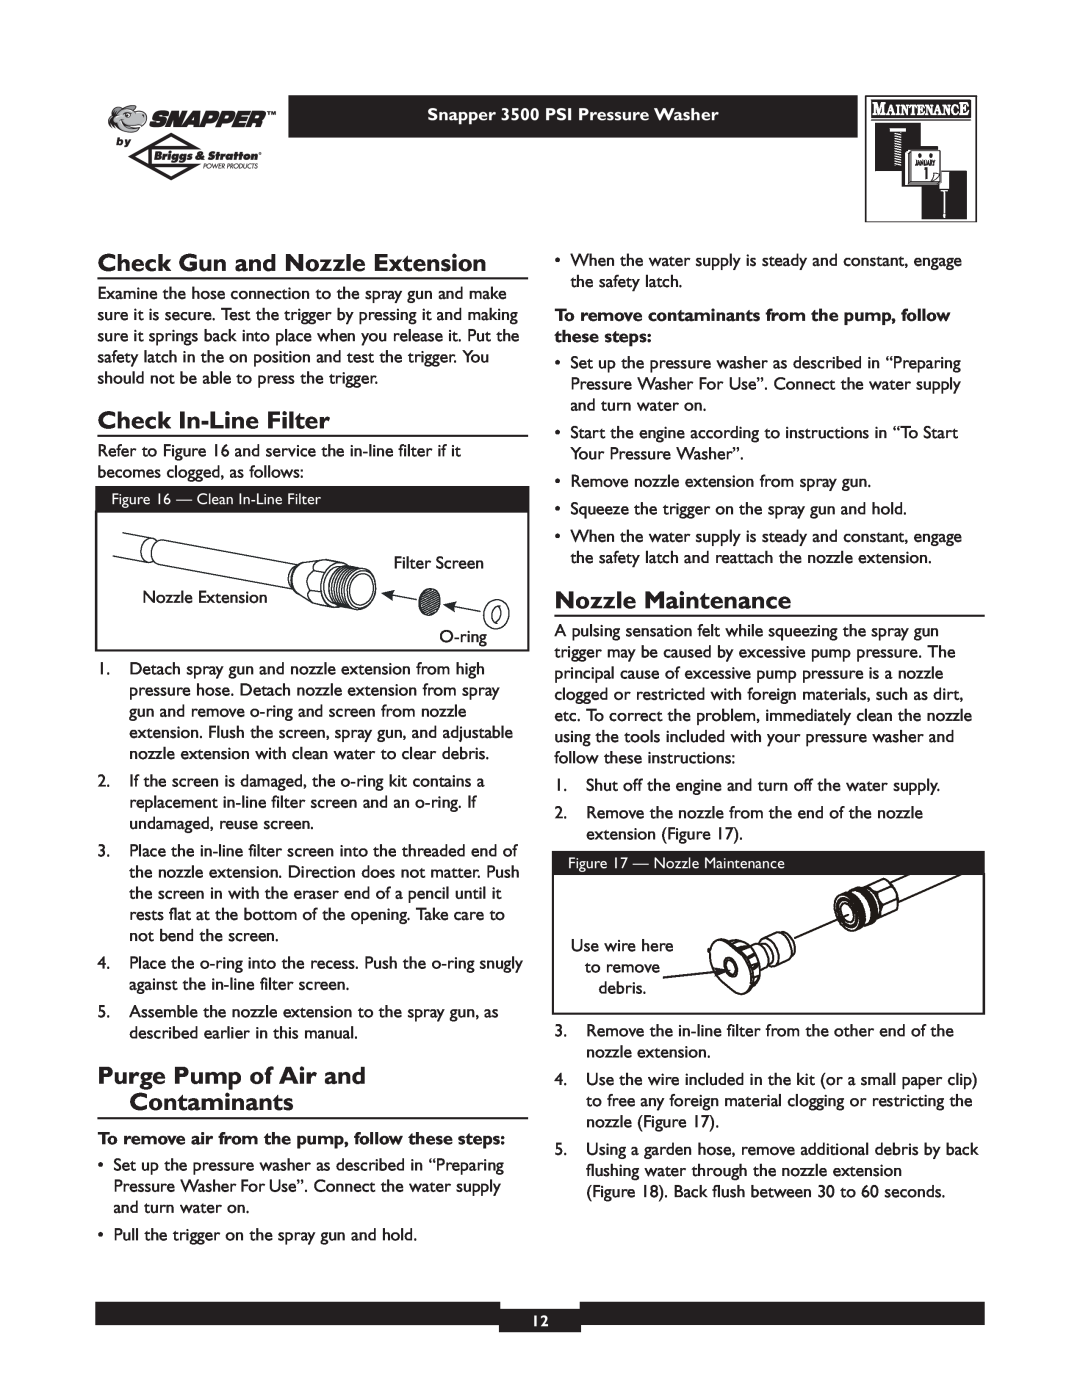 Briggs & Stratton 3500PSI manual Check Gun and Nozzle Extension, Check In-Line Filter, Nozzle Maintenance 